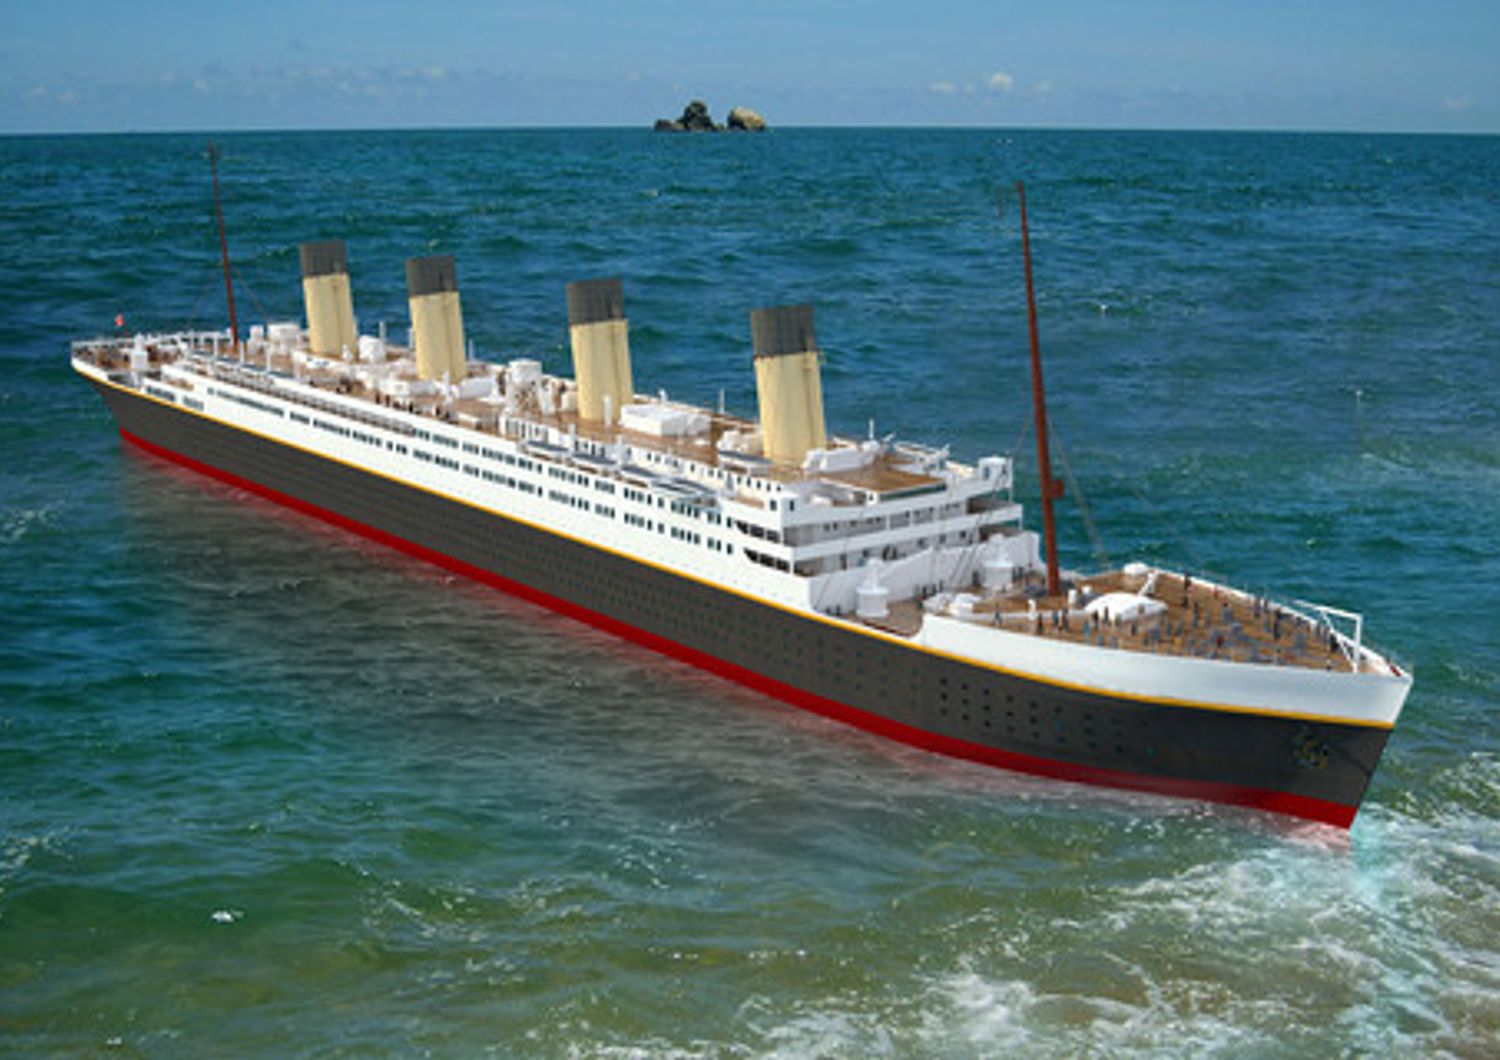 La replica del Titanic, 269 metri di lunghezza e 28 di larghezza, non navighera'. Sara' soltanto l'attrazione di un parco divertimenti nella provincia del Sichuan, a un migliaio di chilometri dal mare. (Afp)&nbsp;